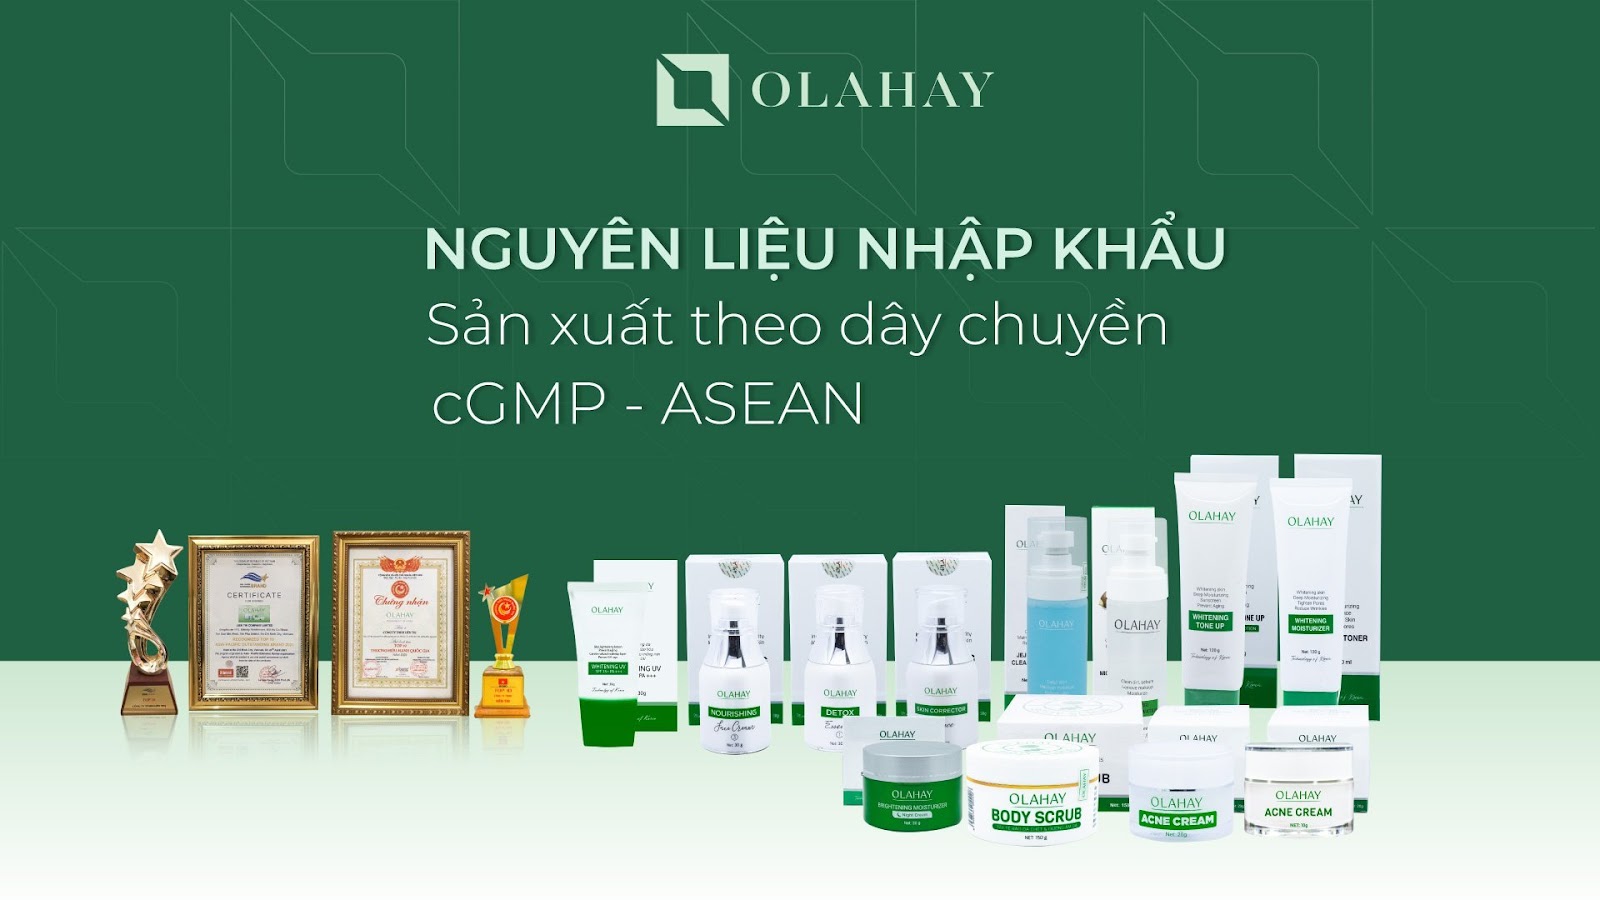 Olahay, thương hiệu đã “tái sinh” thần kỳ làn da của Nguyễn Thị Cẩm, là một trong 10 thương hiệu mạnh quốc gia năm 2020 và nhận được rất nhiều giải thưởng cao quý khác